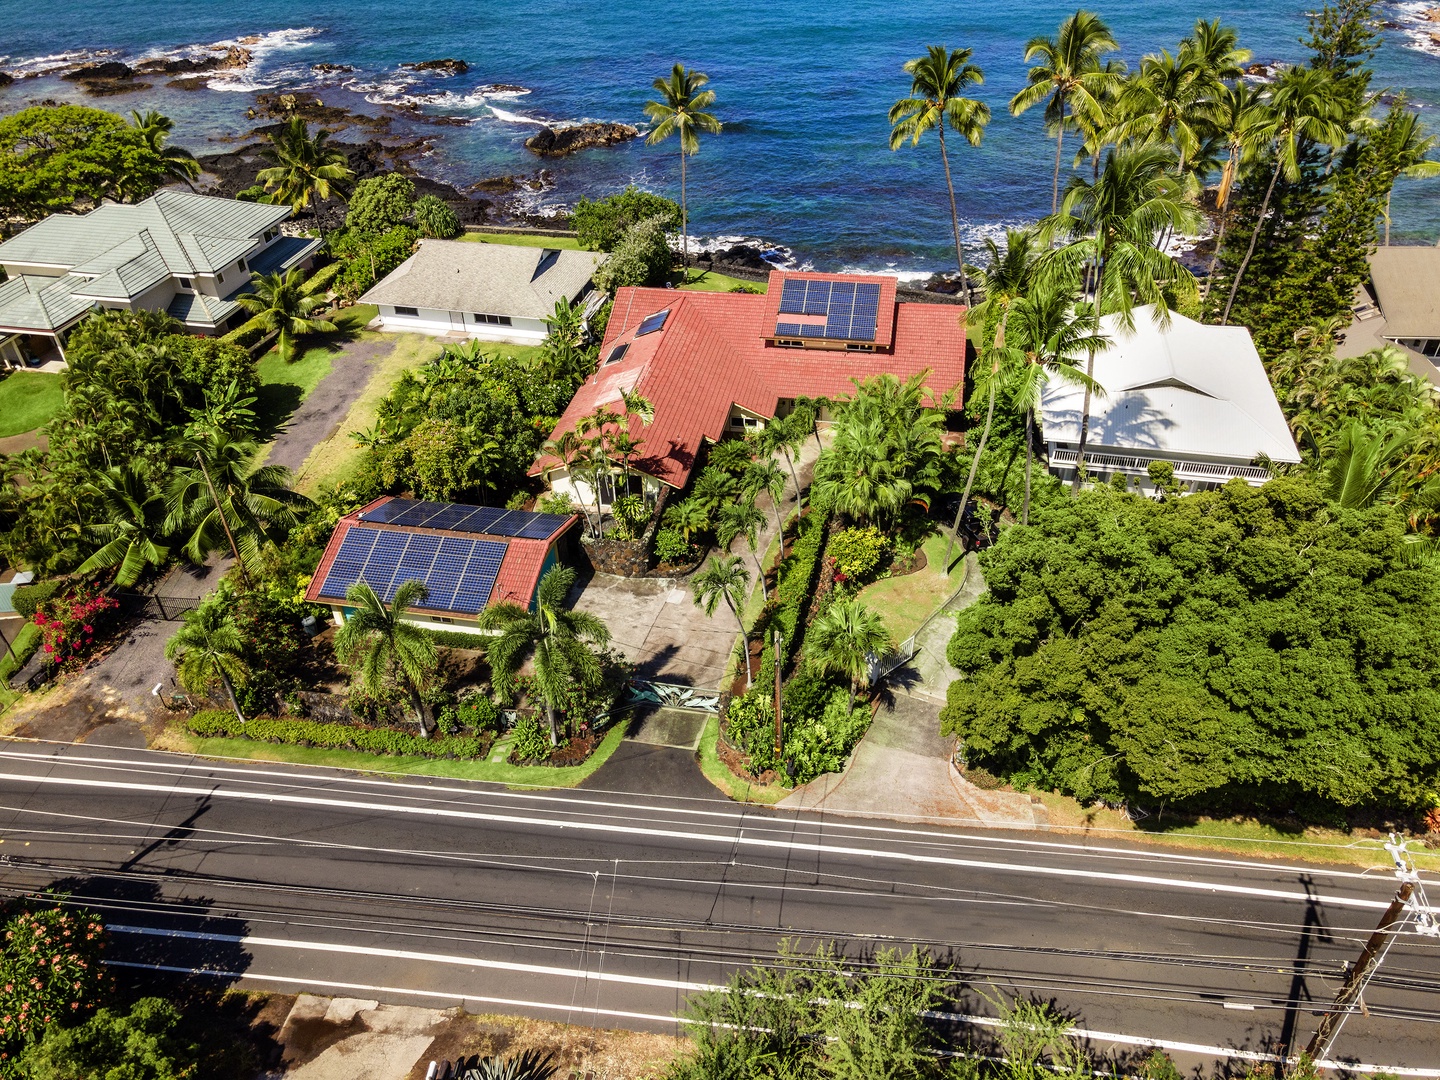 Kailua Kona Vacation Rentals, Hale Pua - Aerial view of Hale Pua along Ali'i Drive